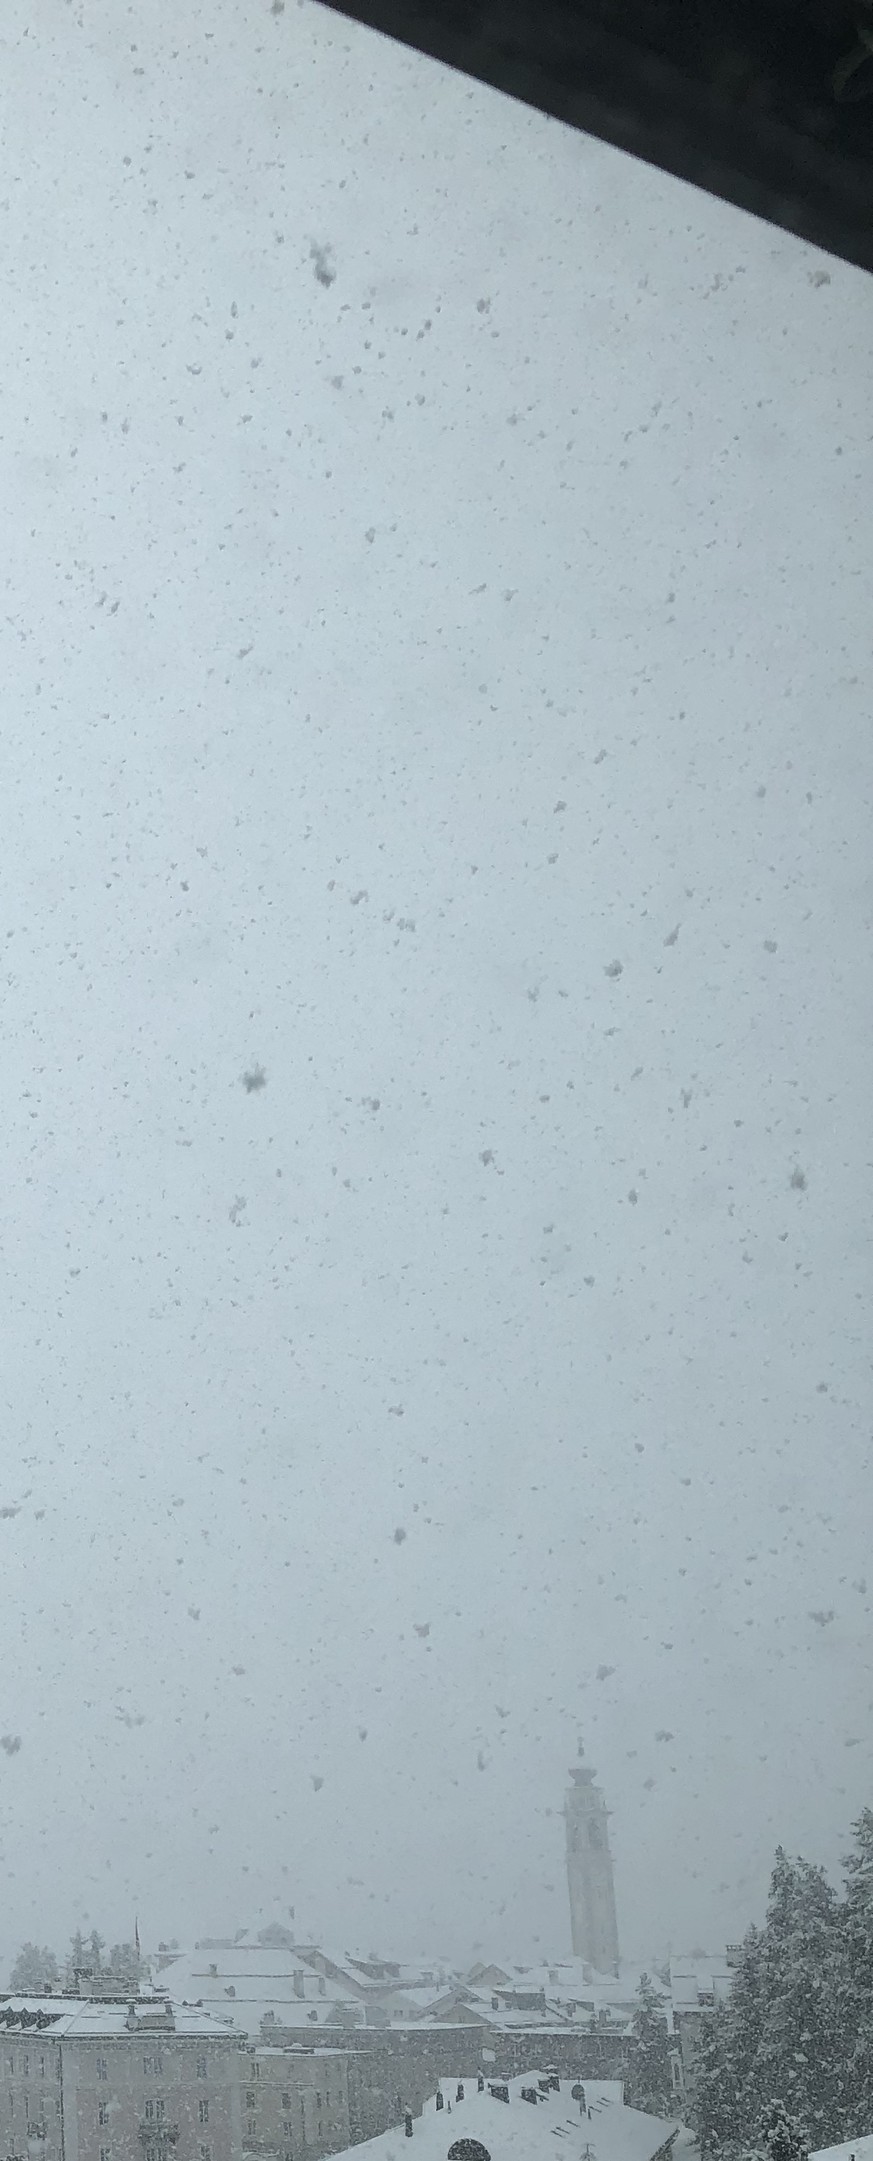 tel: 0764821154
email: Hinand@hispeed.ch
Aufgenommen heute morgen in Samedan, der erste Schnee in diesem Herbst. 

Von: Andrin Hinder